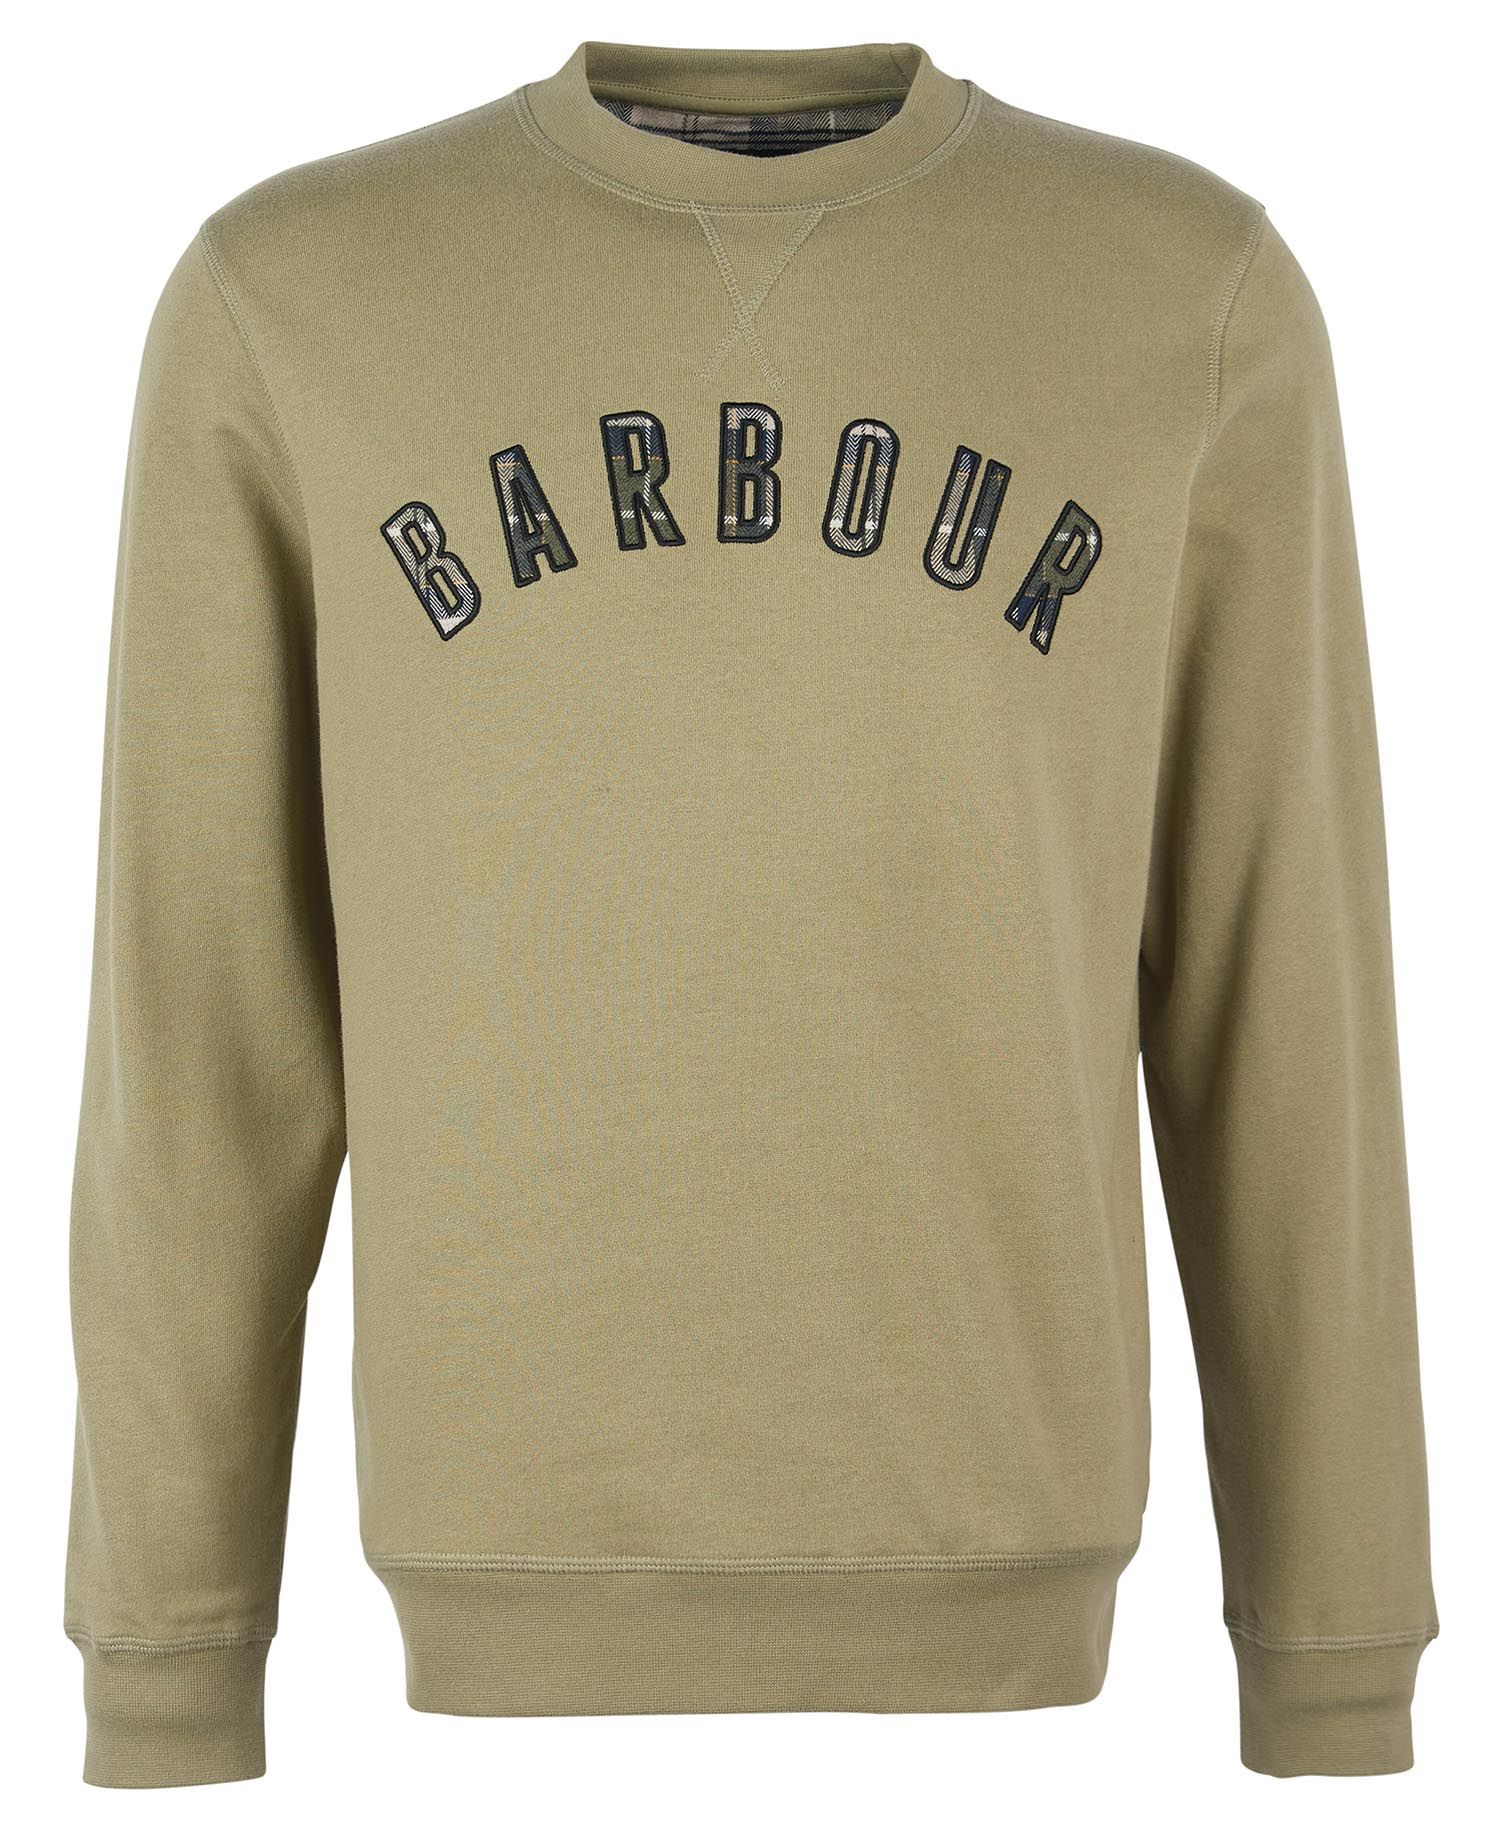 Barbour Barbour Debson Crew Neck Sweatshirt Bleached Olive